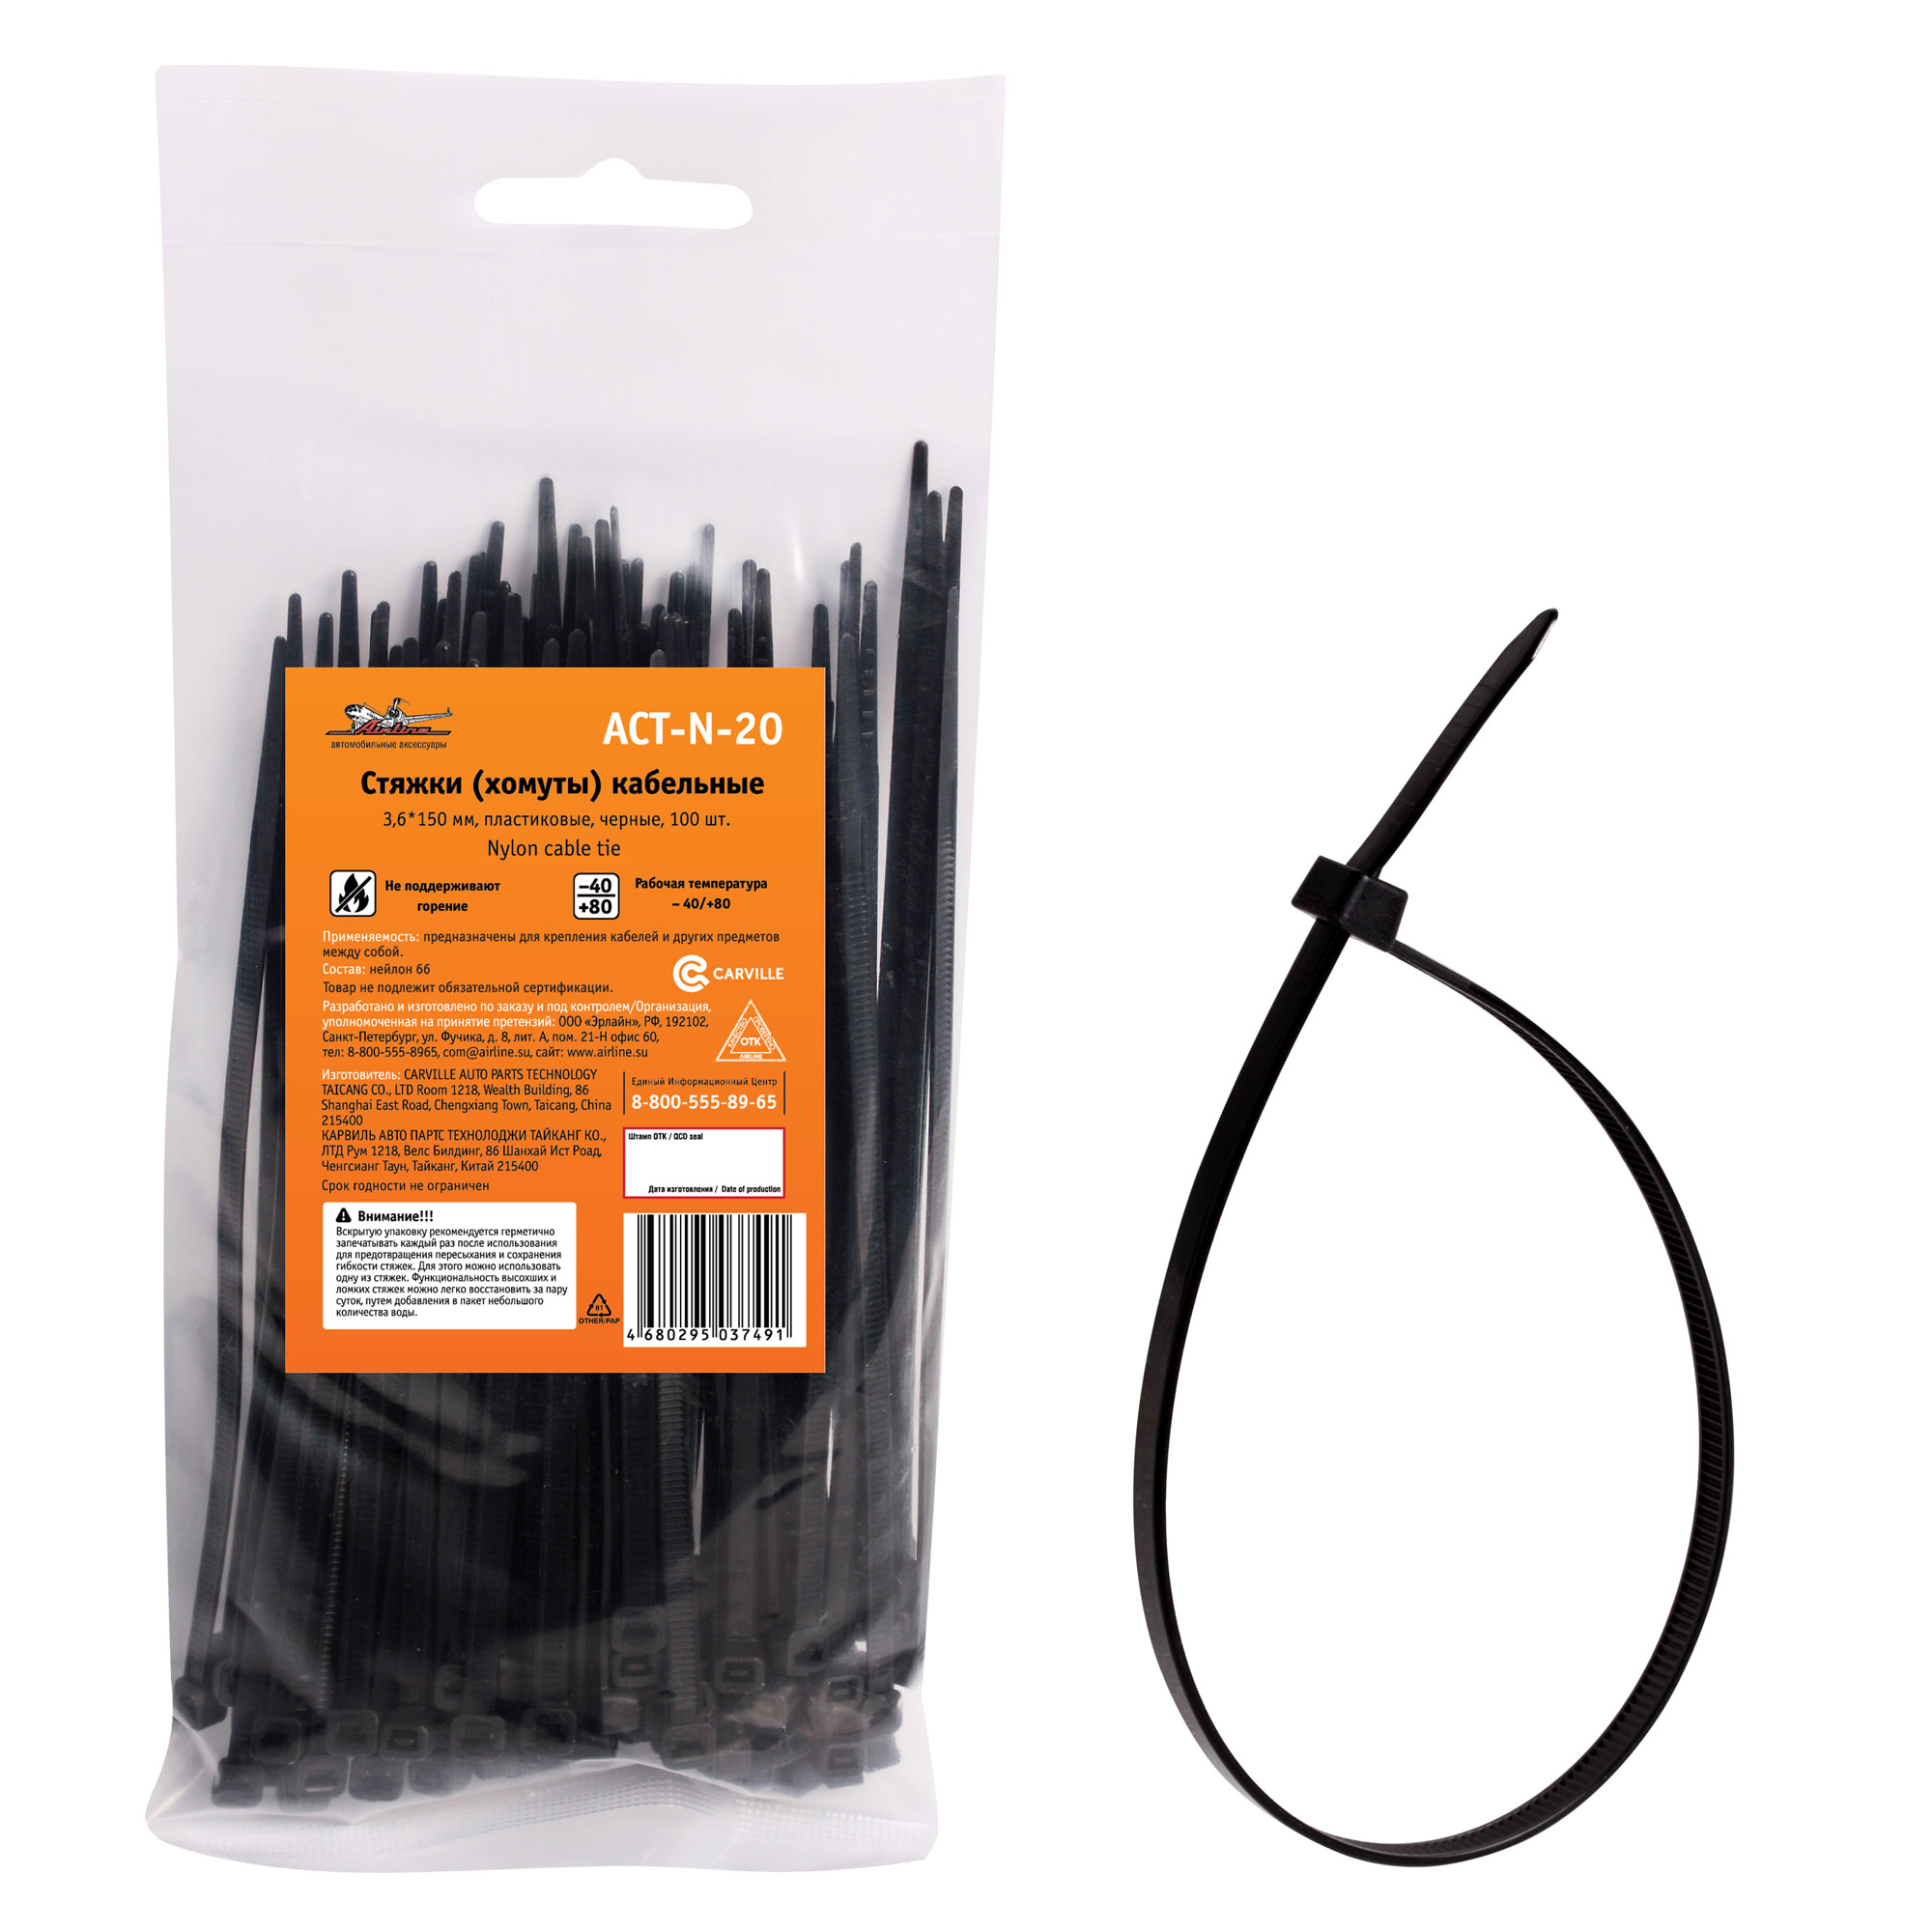 Стяжки (хомуты) кабельные 3,6*150 мм, пластиковые, черные, 100 шт. - AIRLINE ACT-N-20